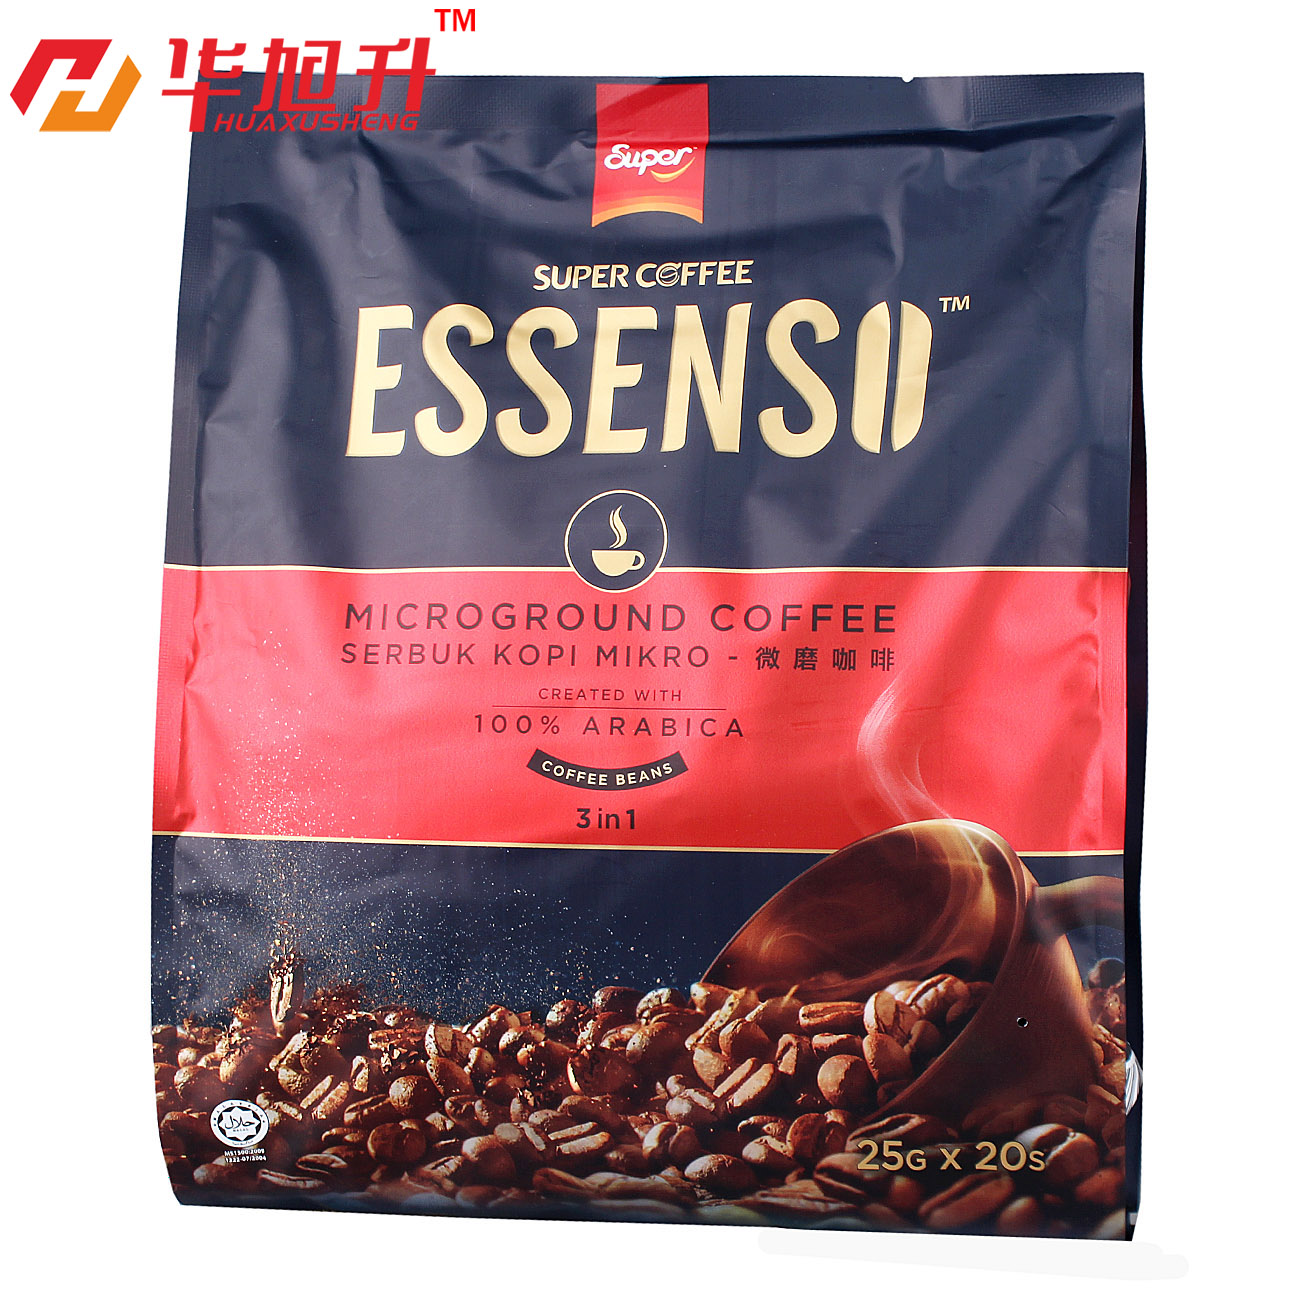 多省包邮 马来西亚进口super ESSENSO艾昇斯3合1微磨速溶咖啡500g折扣优惠信息